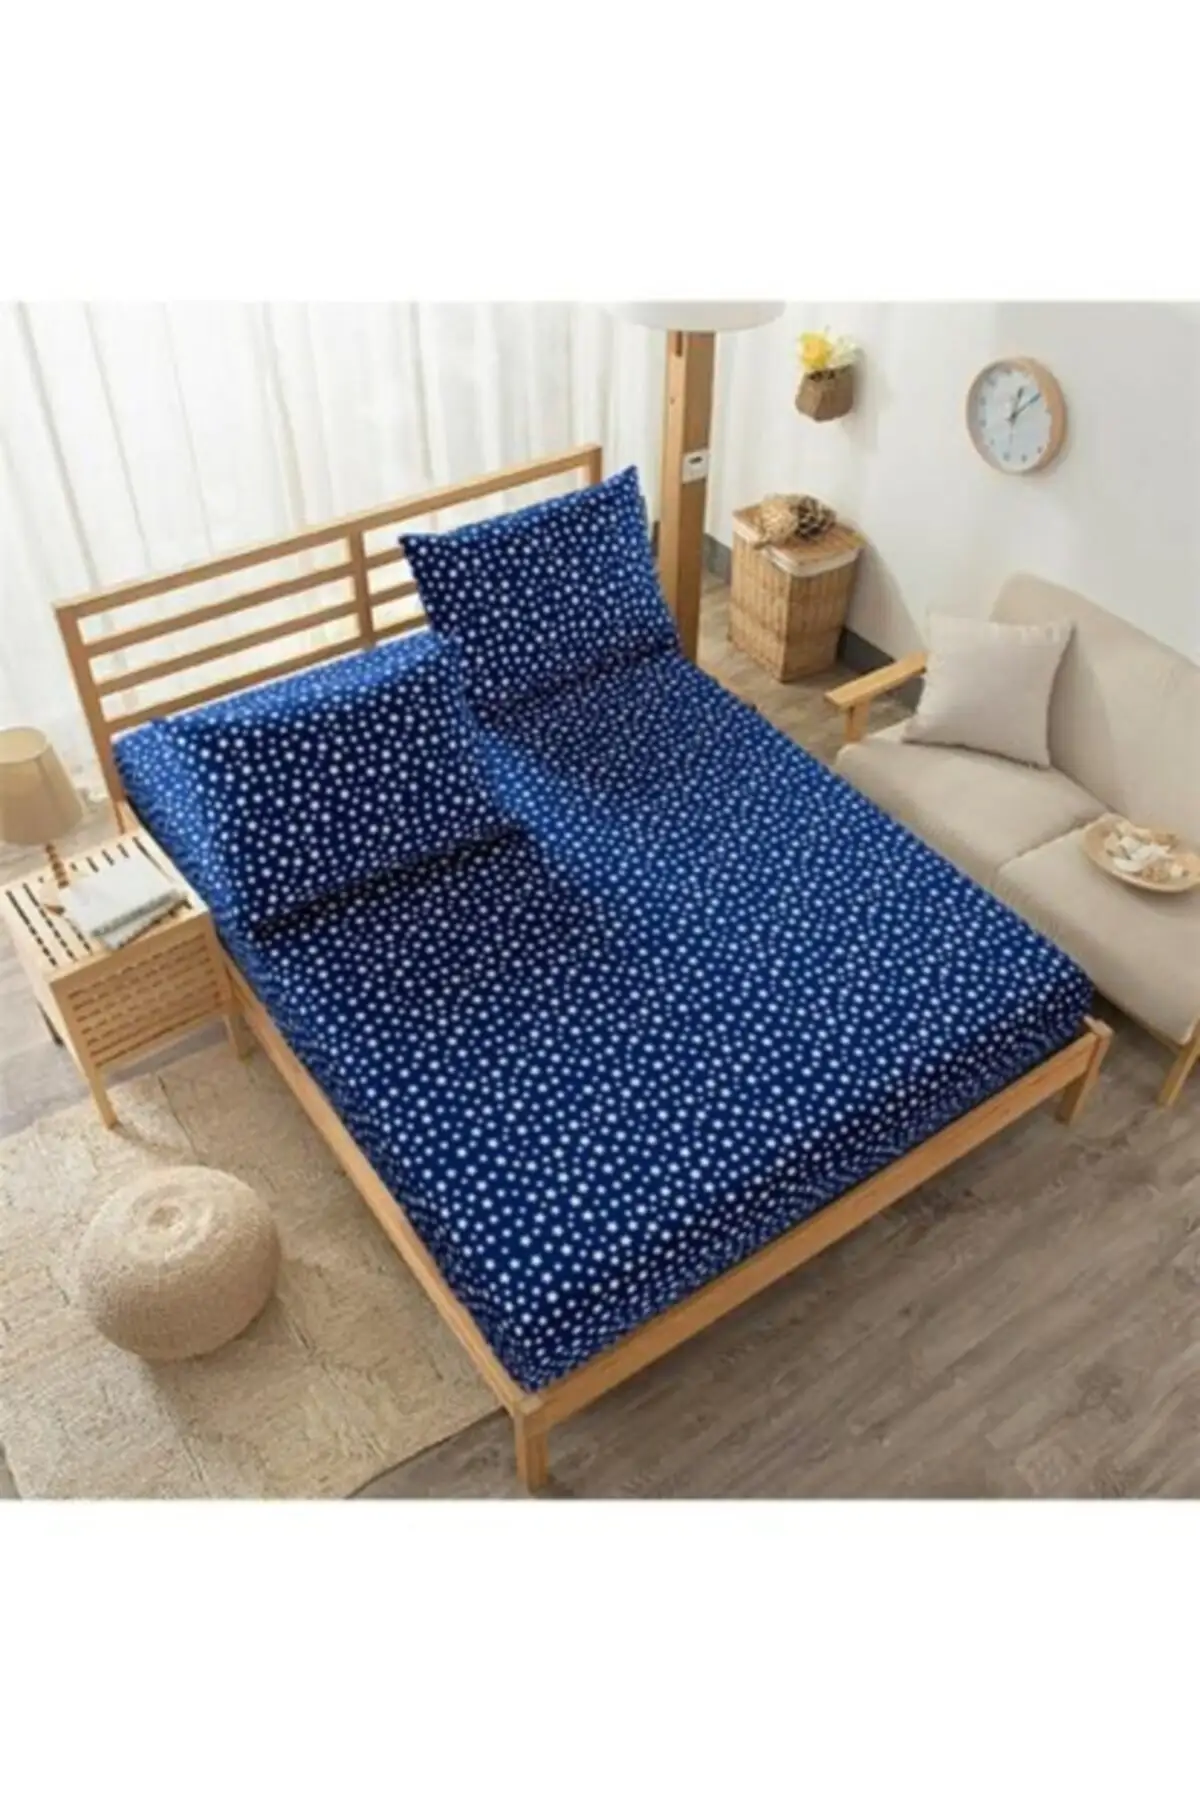 

Натяжная простыня и чехол для подушки, темно-синее хлопковое постельное белье с принтом звезд, 160x200